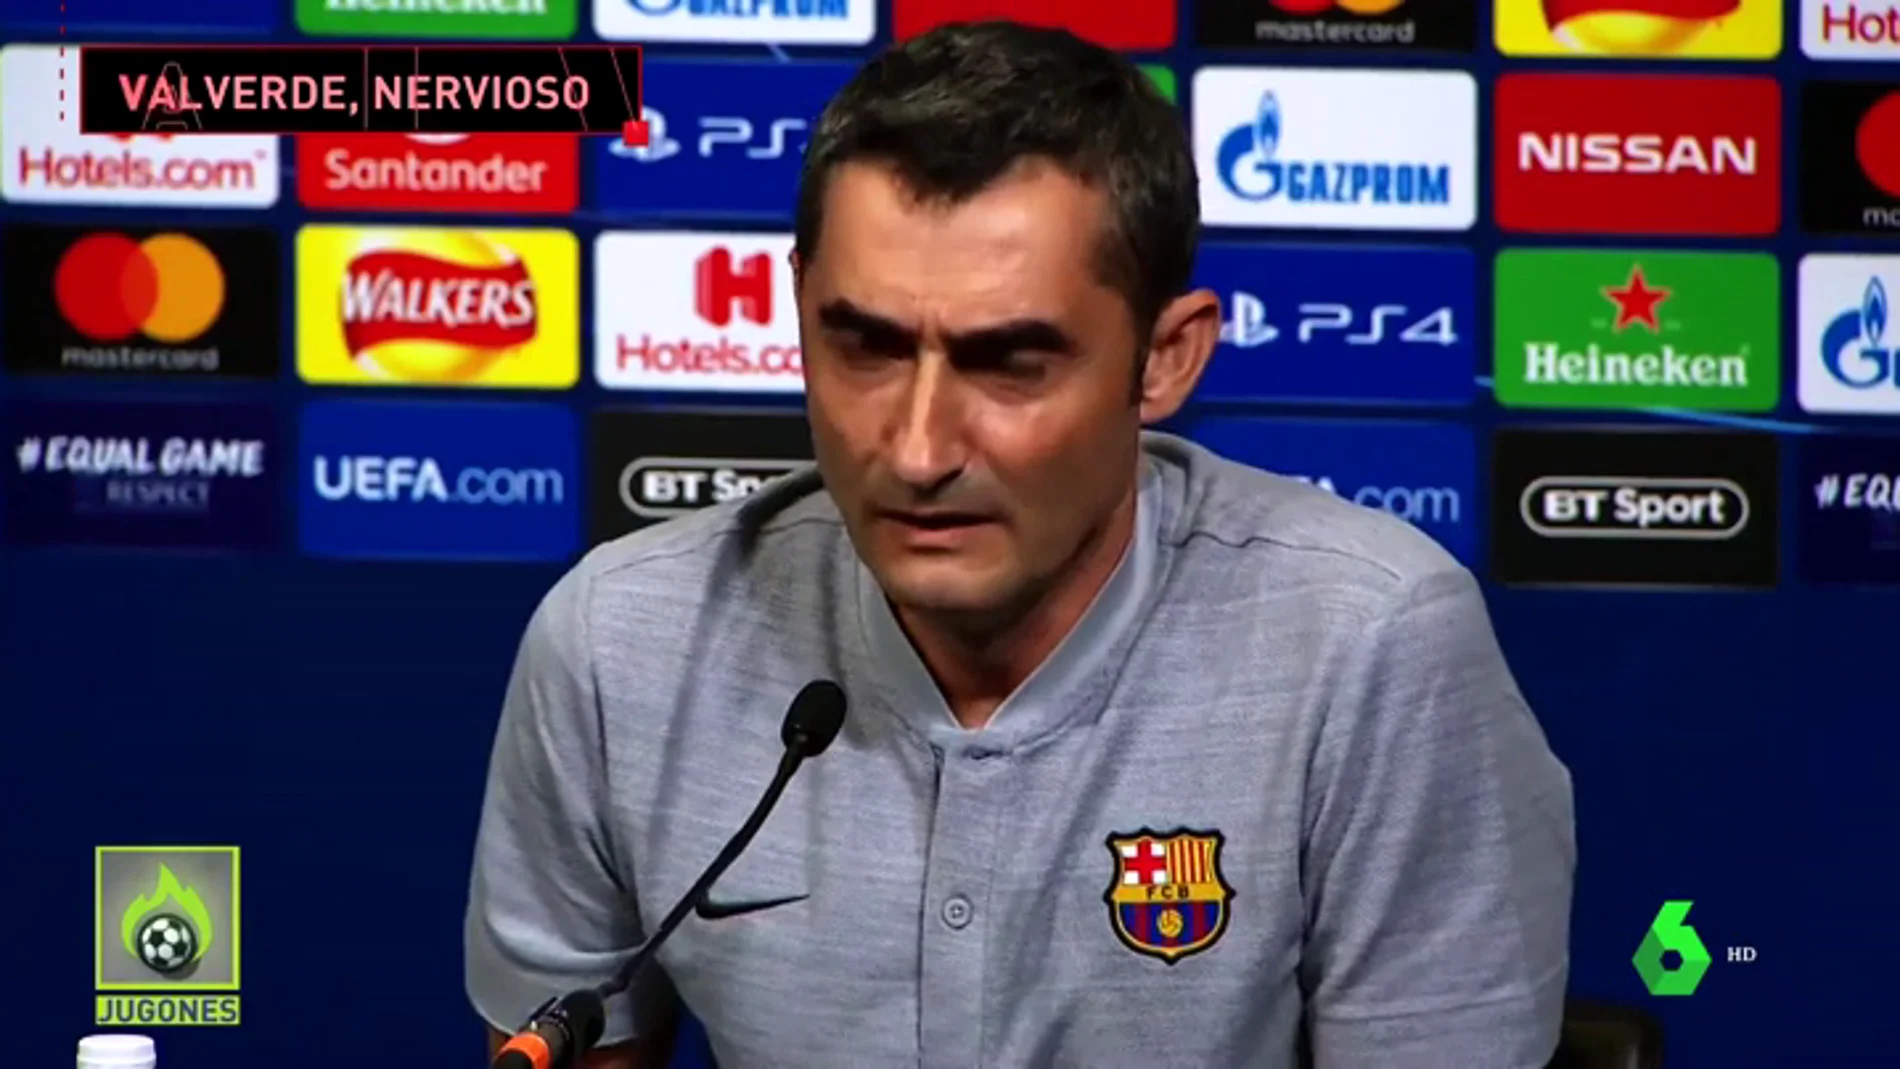 Valverde, nervioso antes de visitar Wembley: "Ya sabemos cómo es esto, siempre hay voces discordantes y cuando pierdes más"